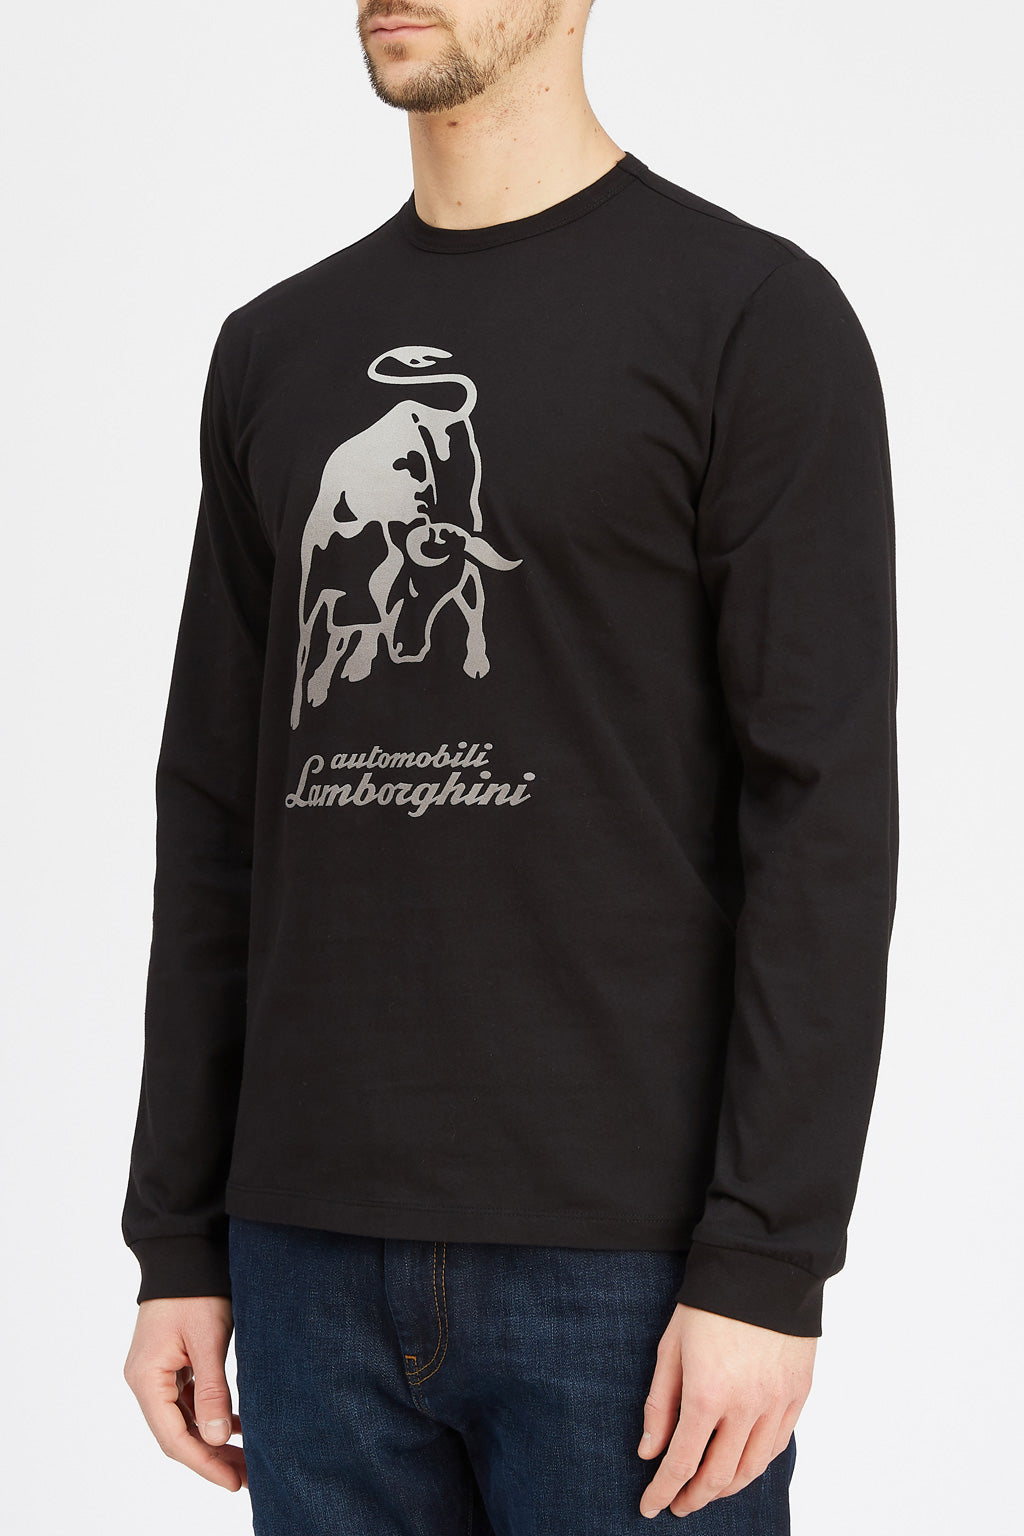 LAMBORGHINI Men's Big Bull Long Sleeve T-Shirt Black